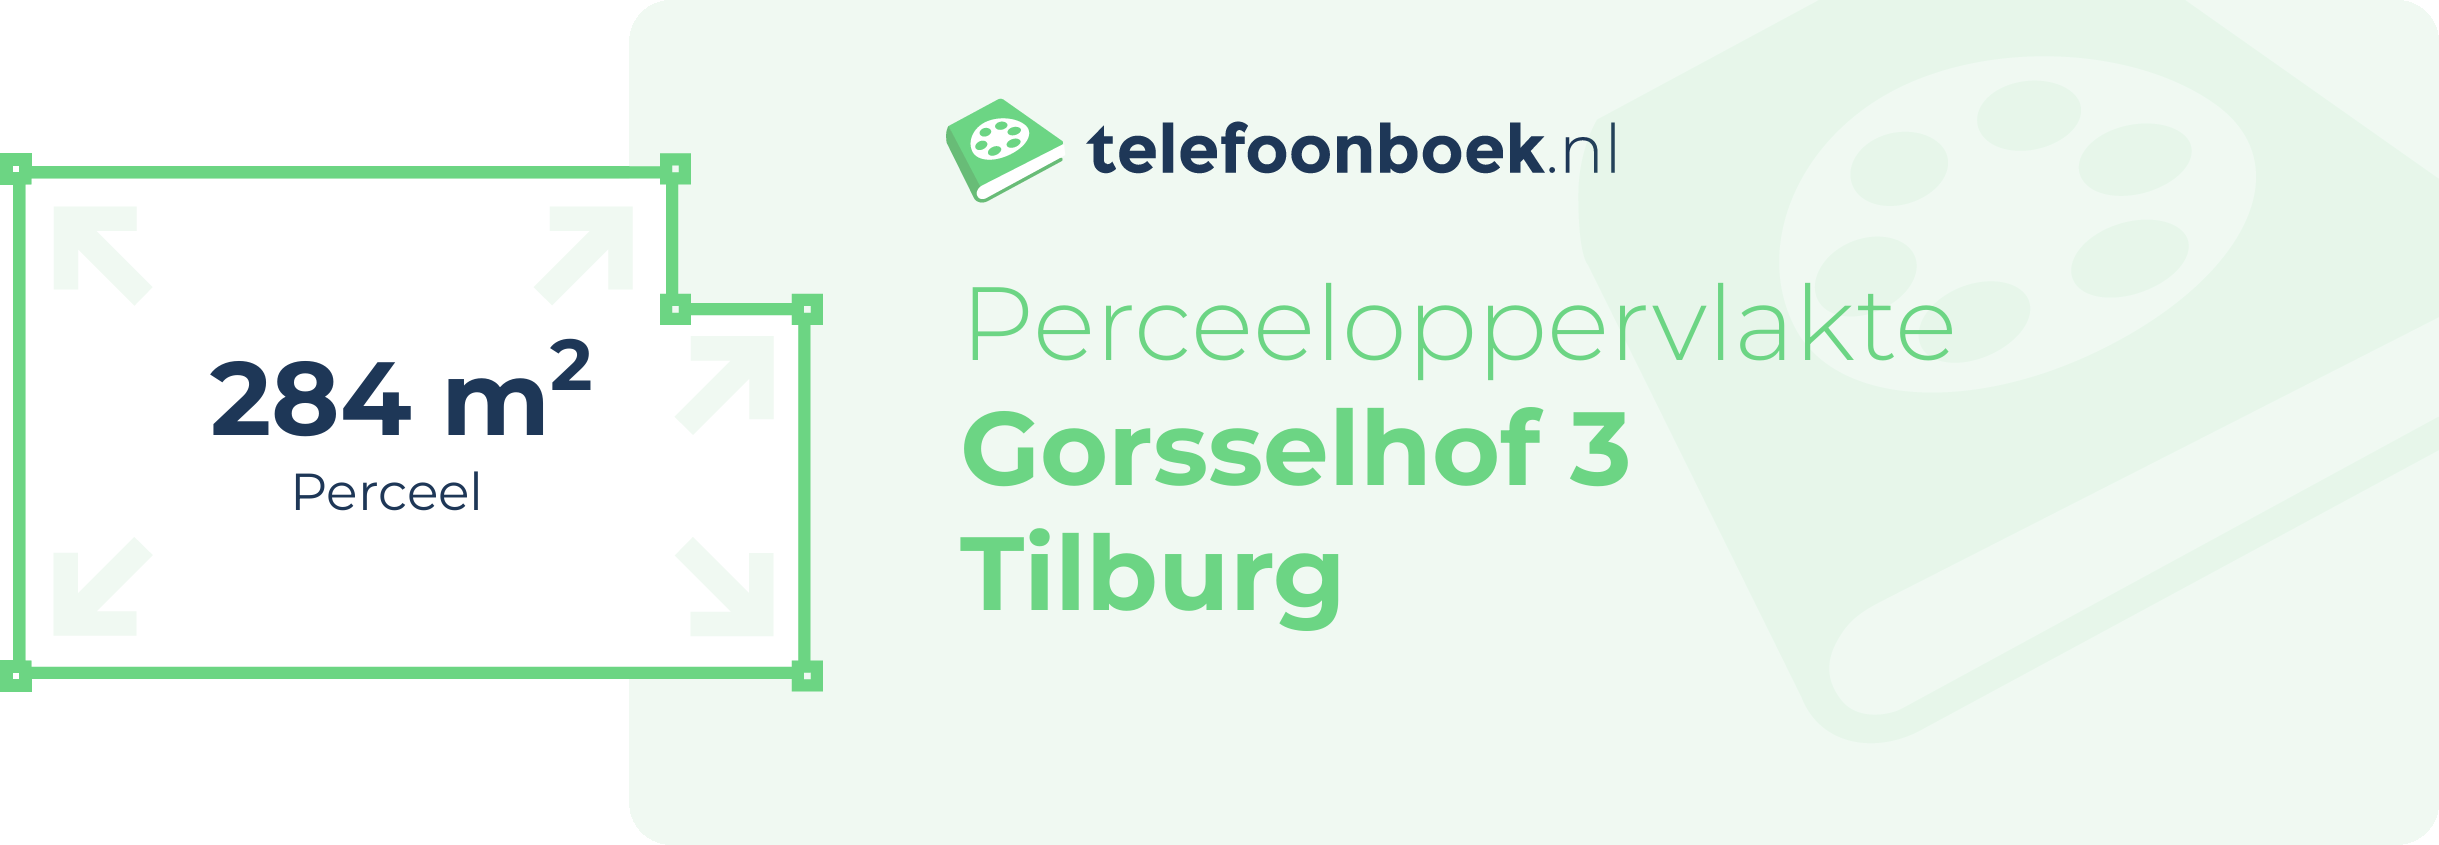 Perceeloppervlakte Gorsselhof 3 Tilburg